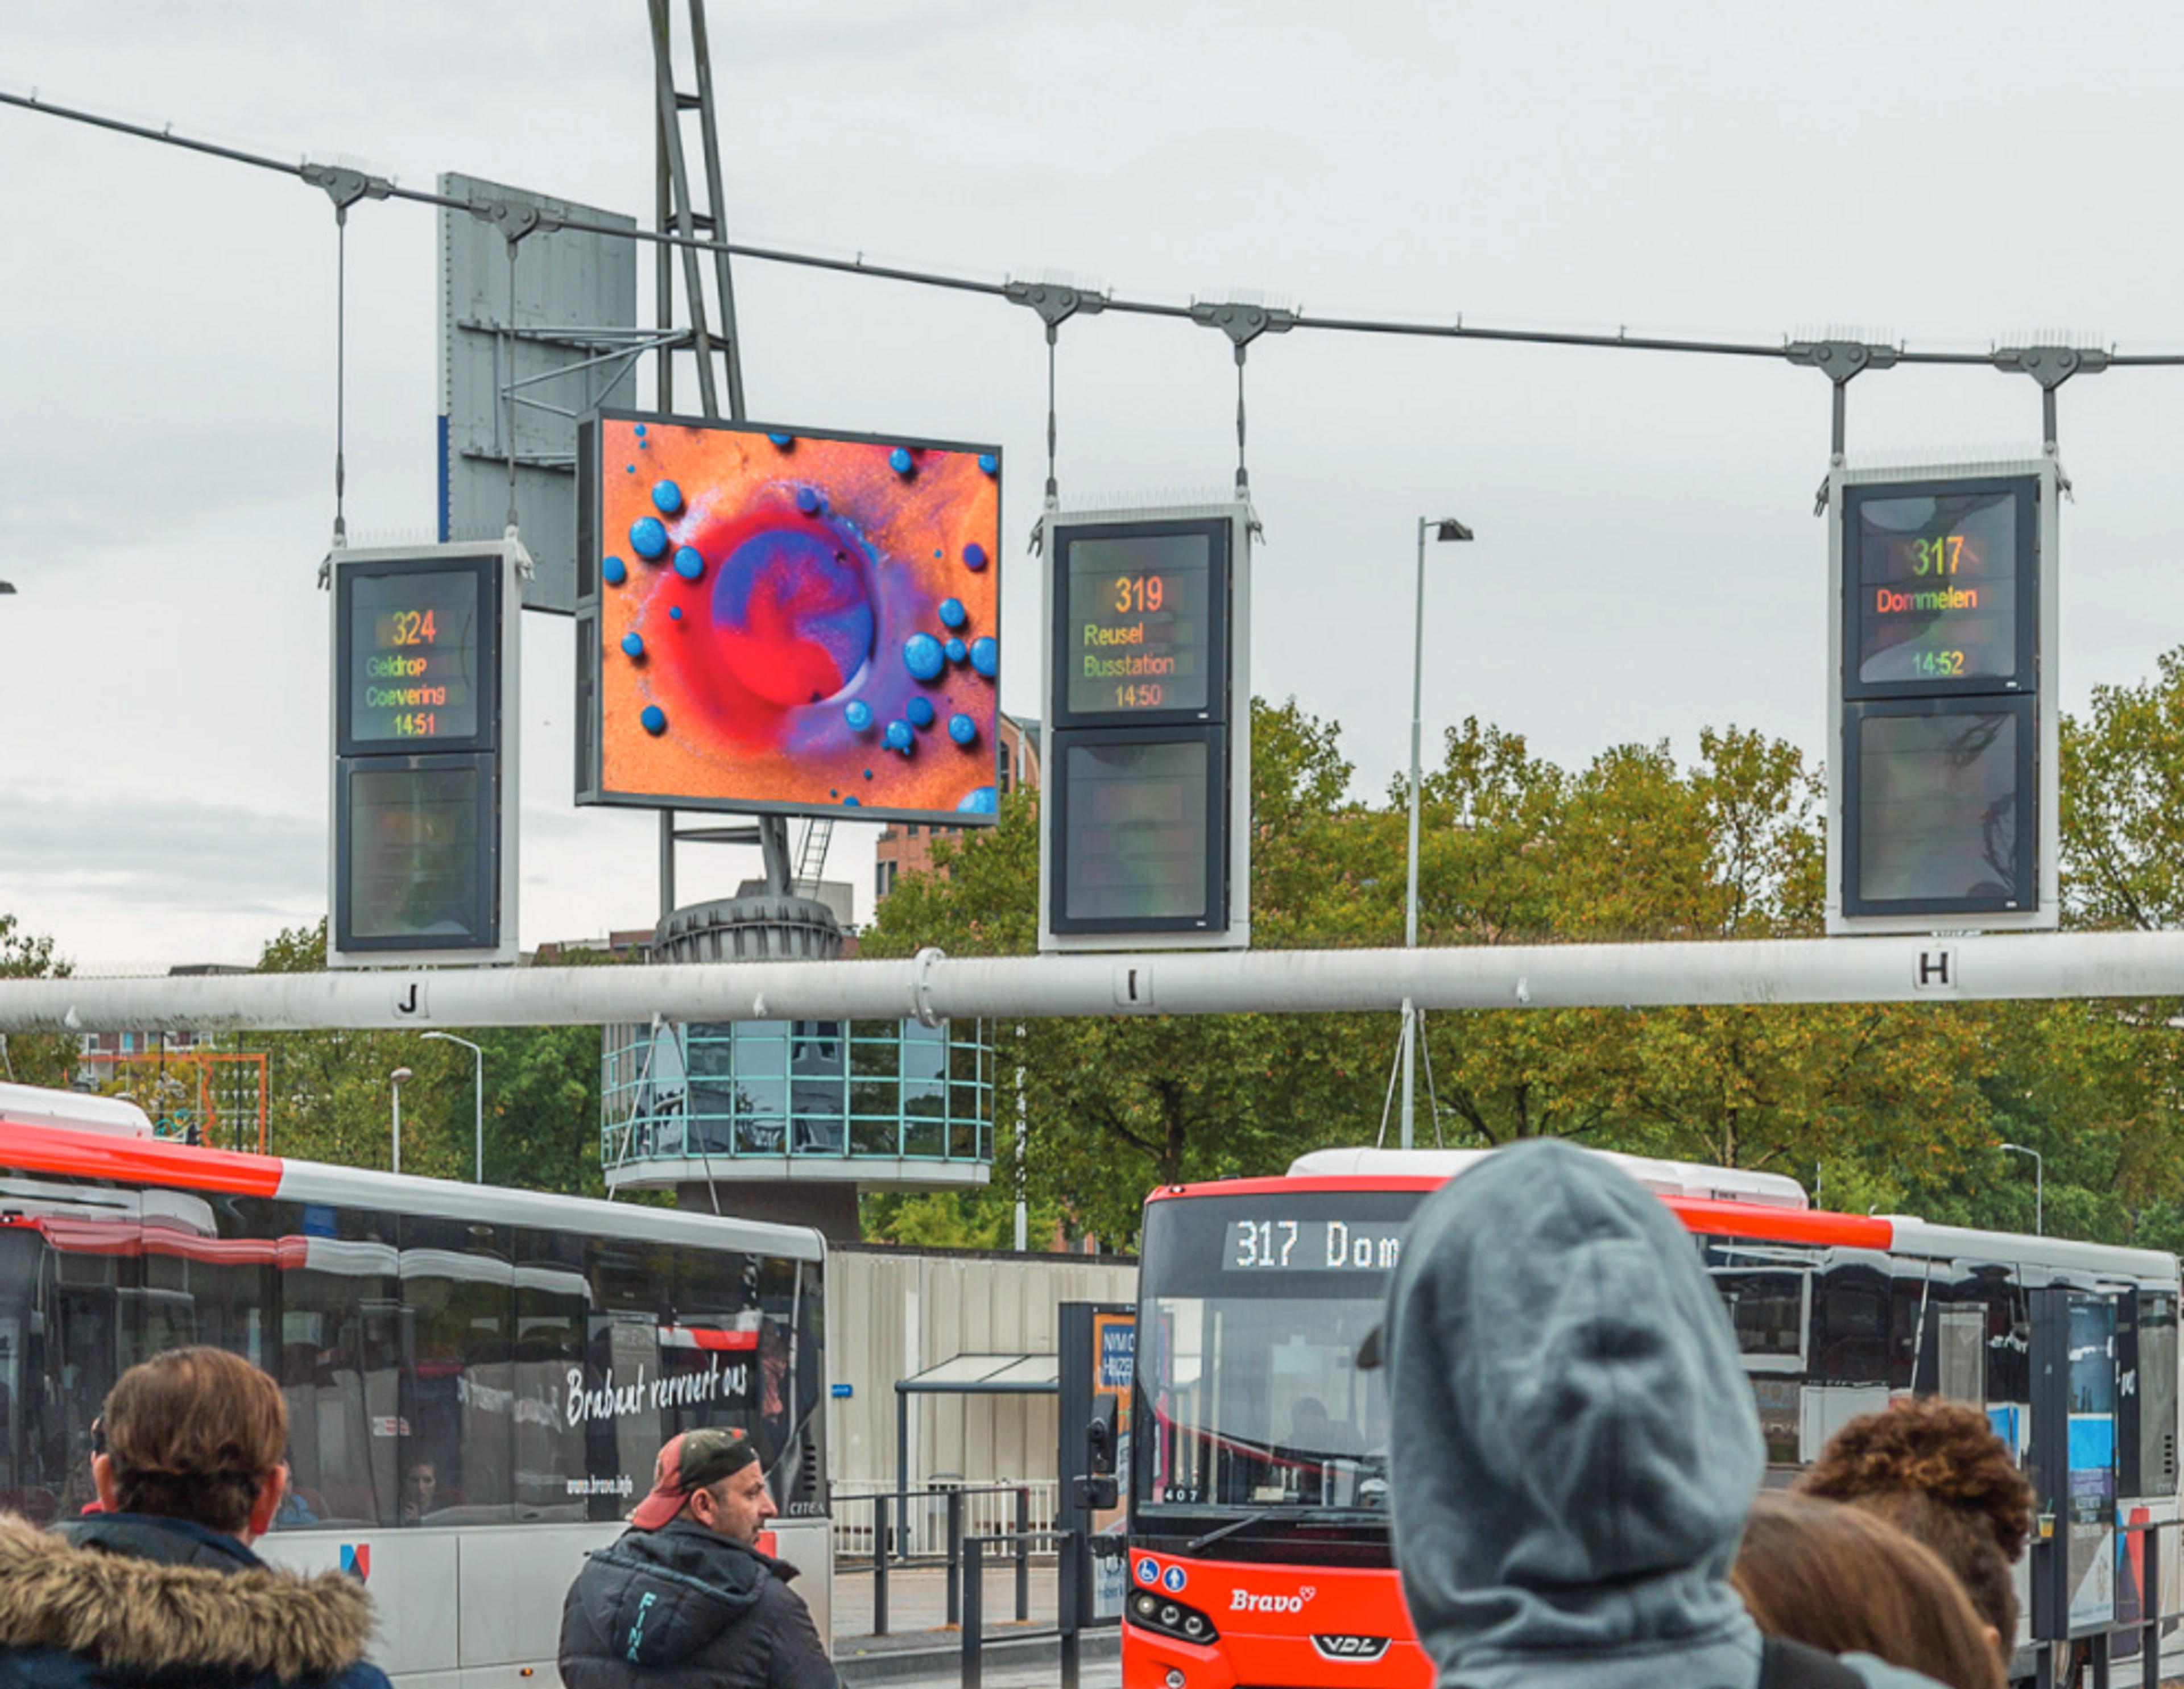 LEDscherm van 52m² op het busplein bij Station Eindhoven